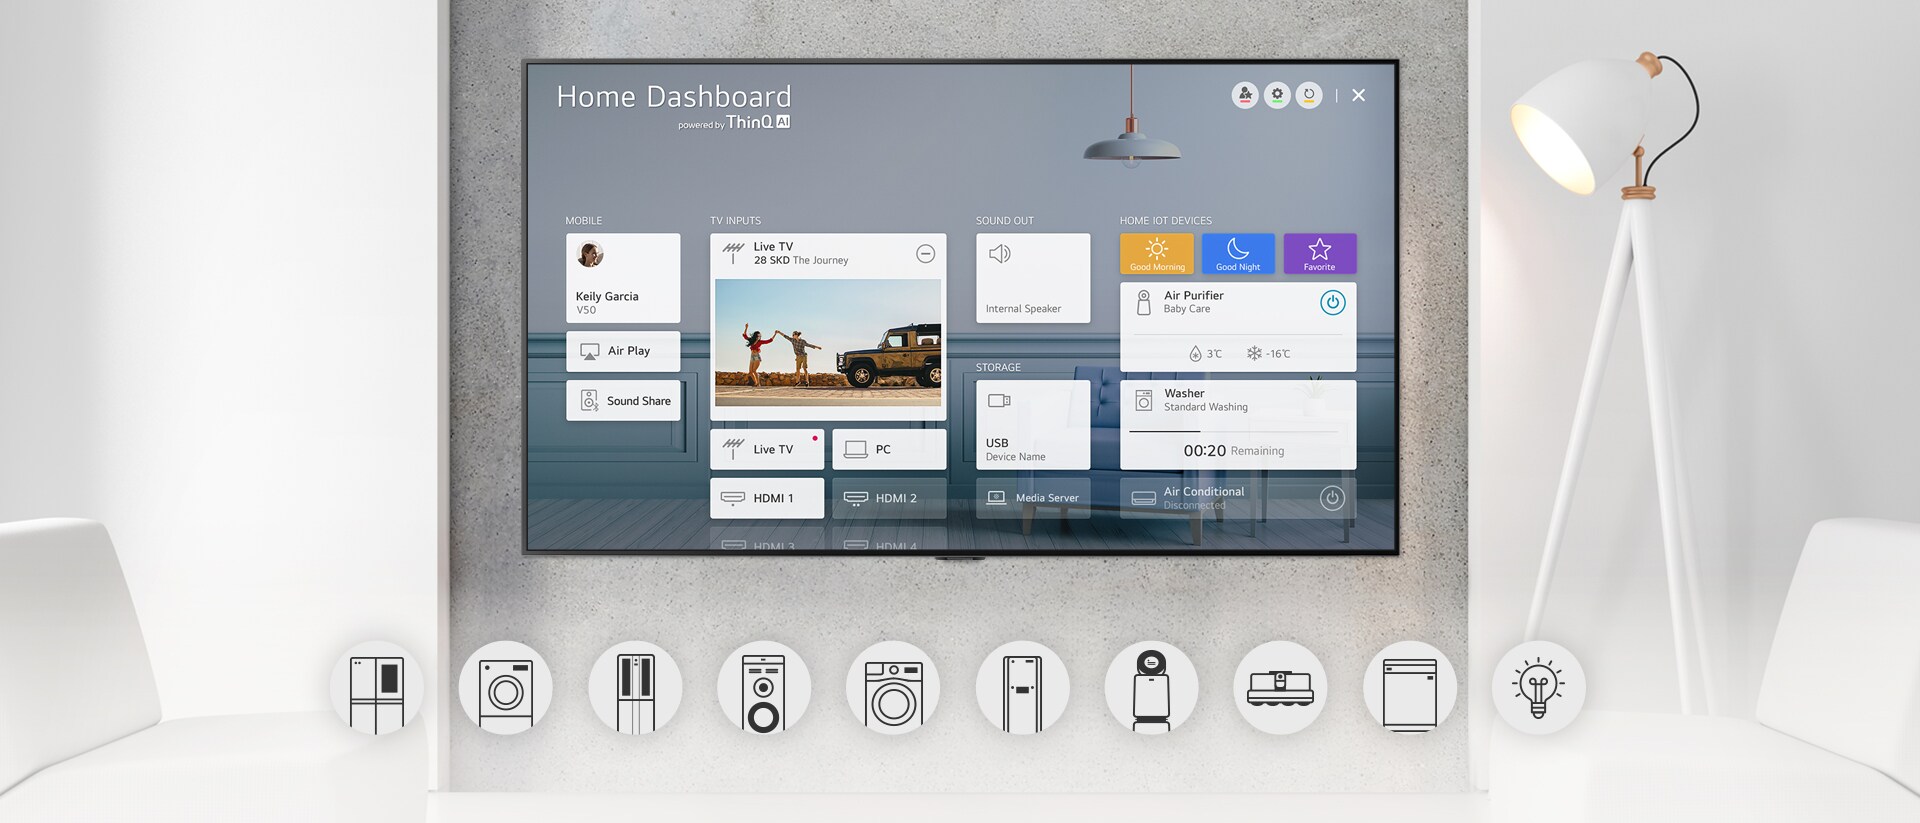 Televize namontovaná na stěnu s obrazovkou Home Dashboard a grafickými logy domácích spotřebičů pod ní